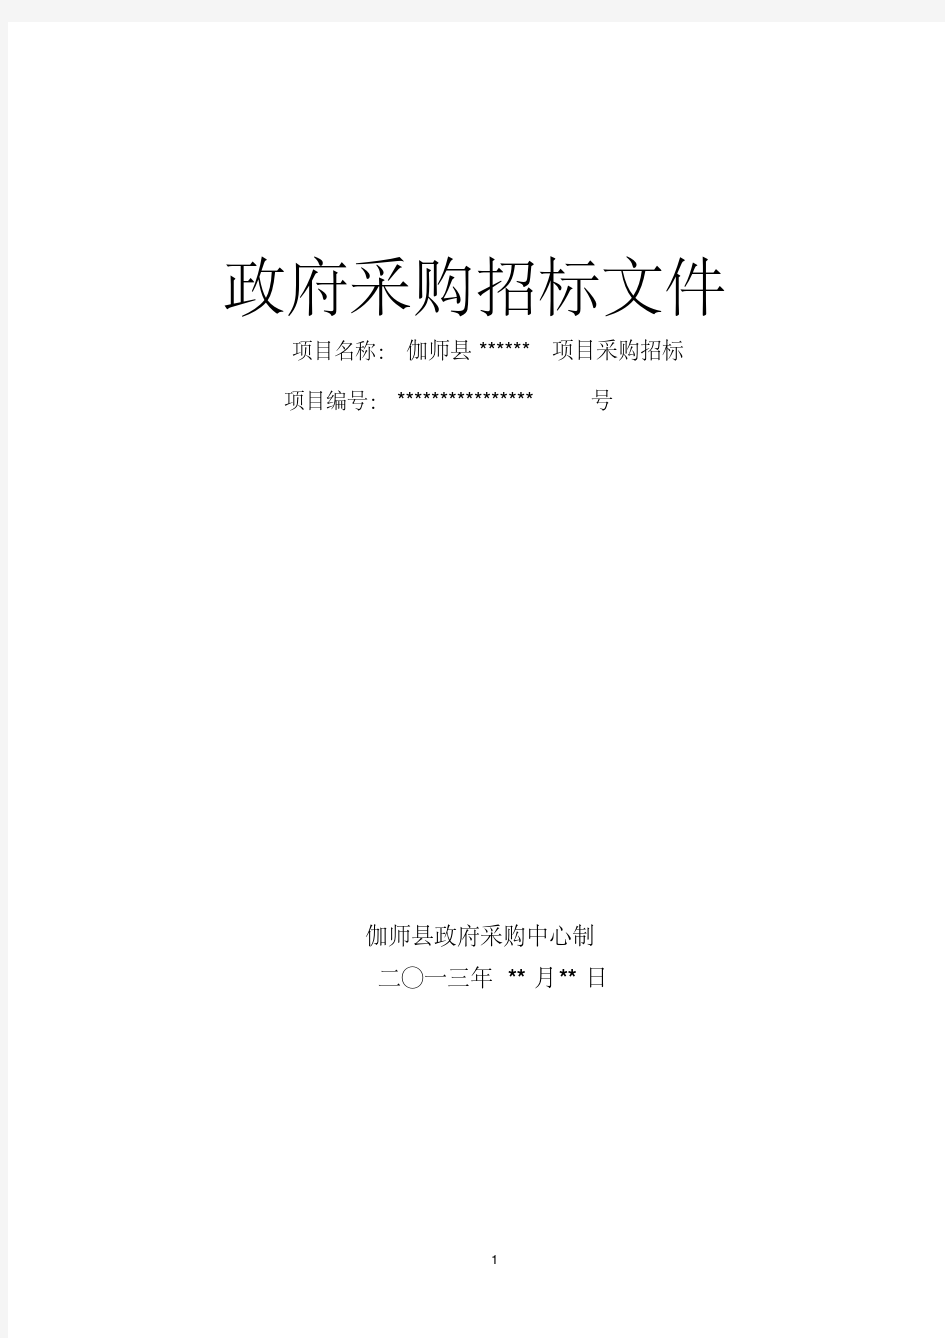 新版招标文件范本-新版.pdf